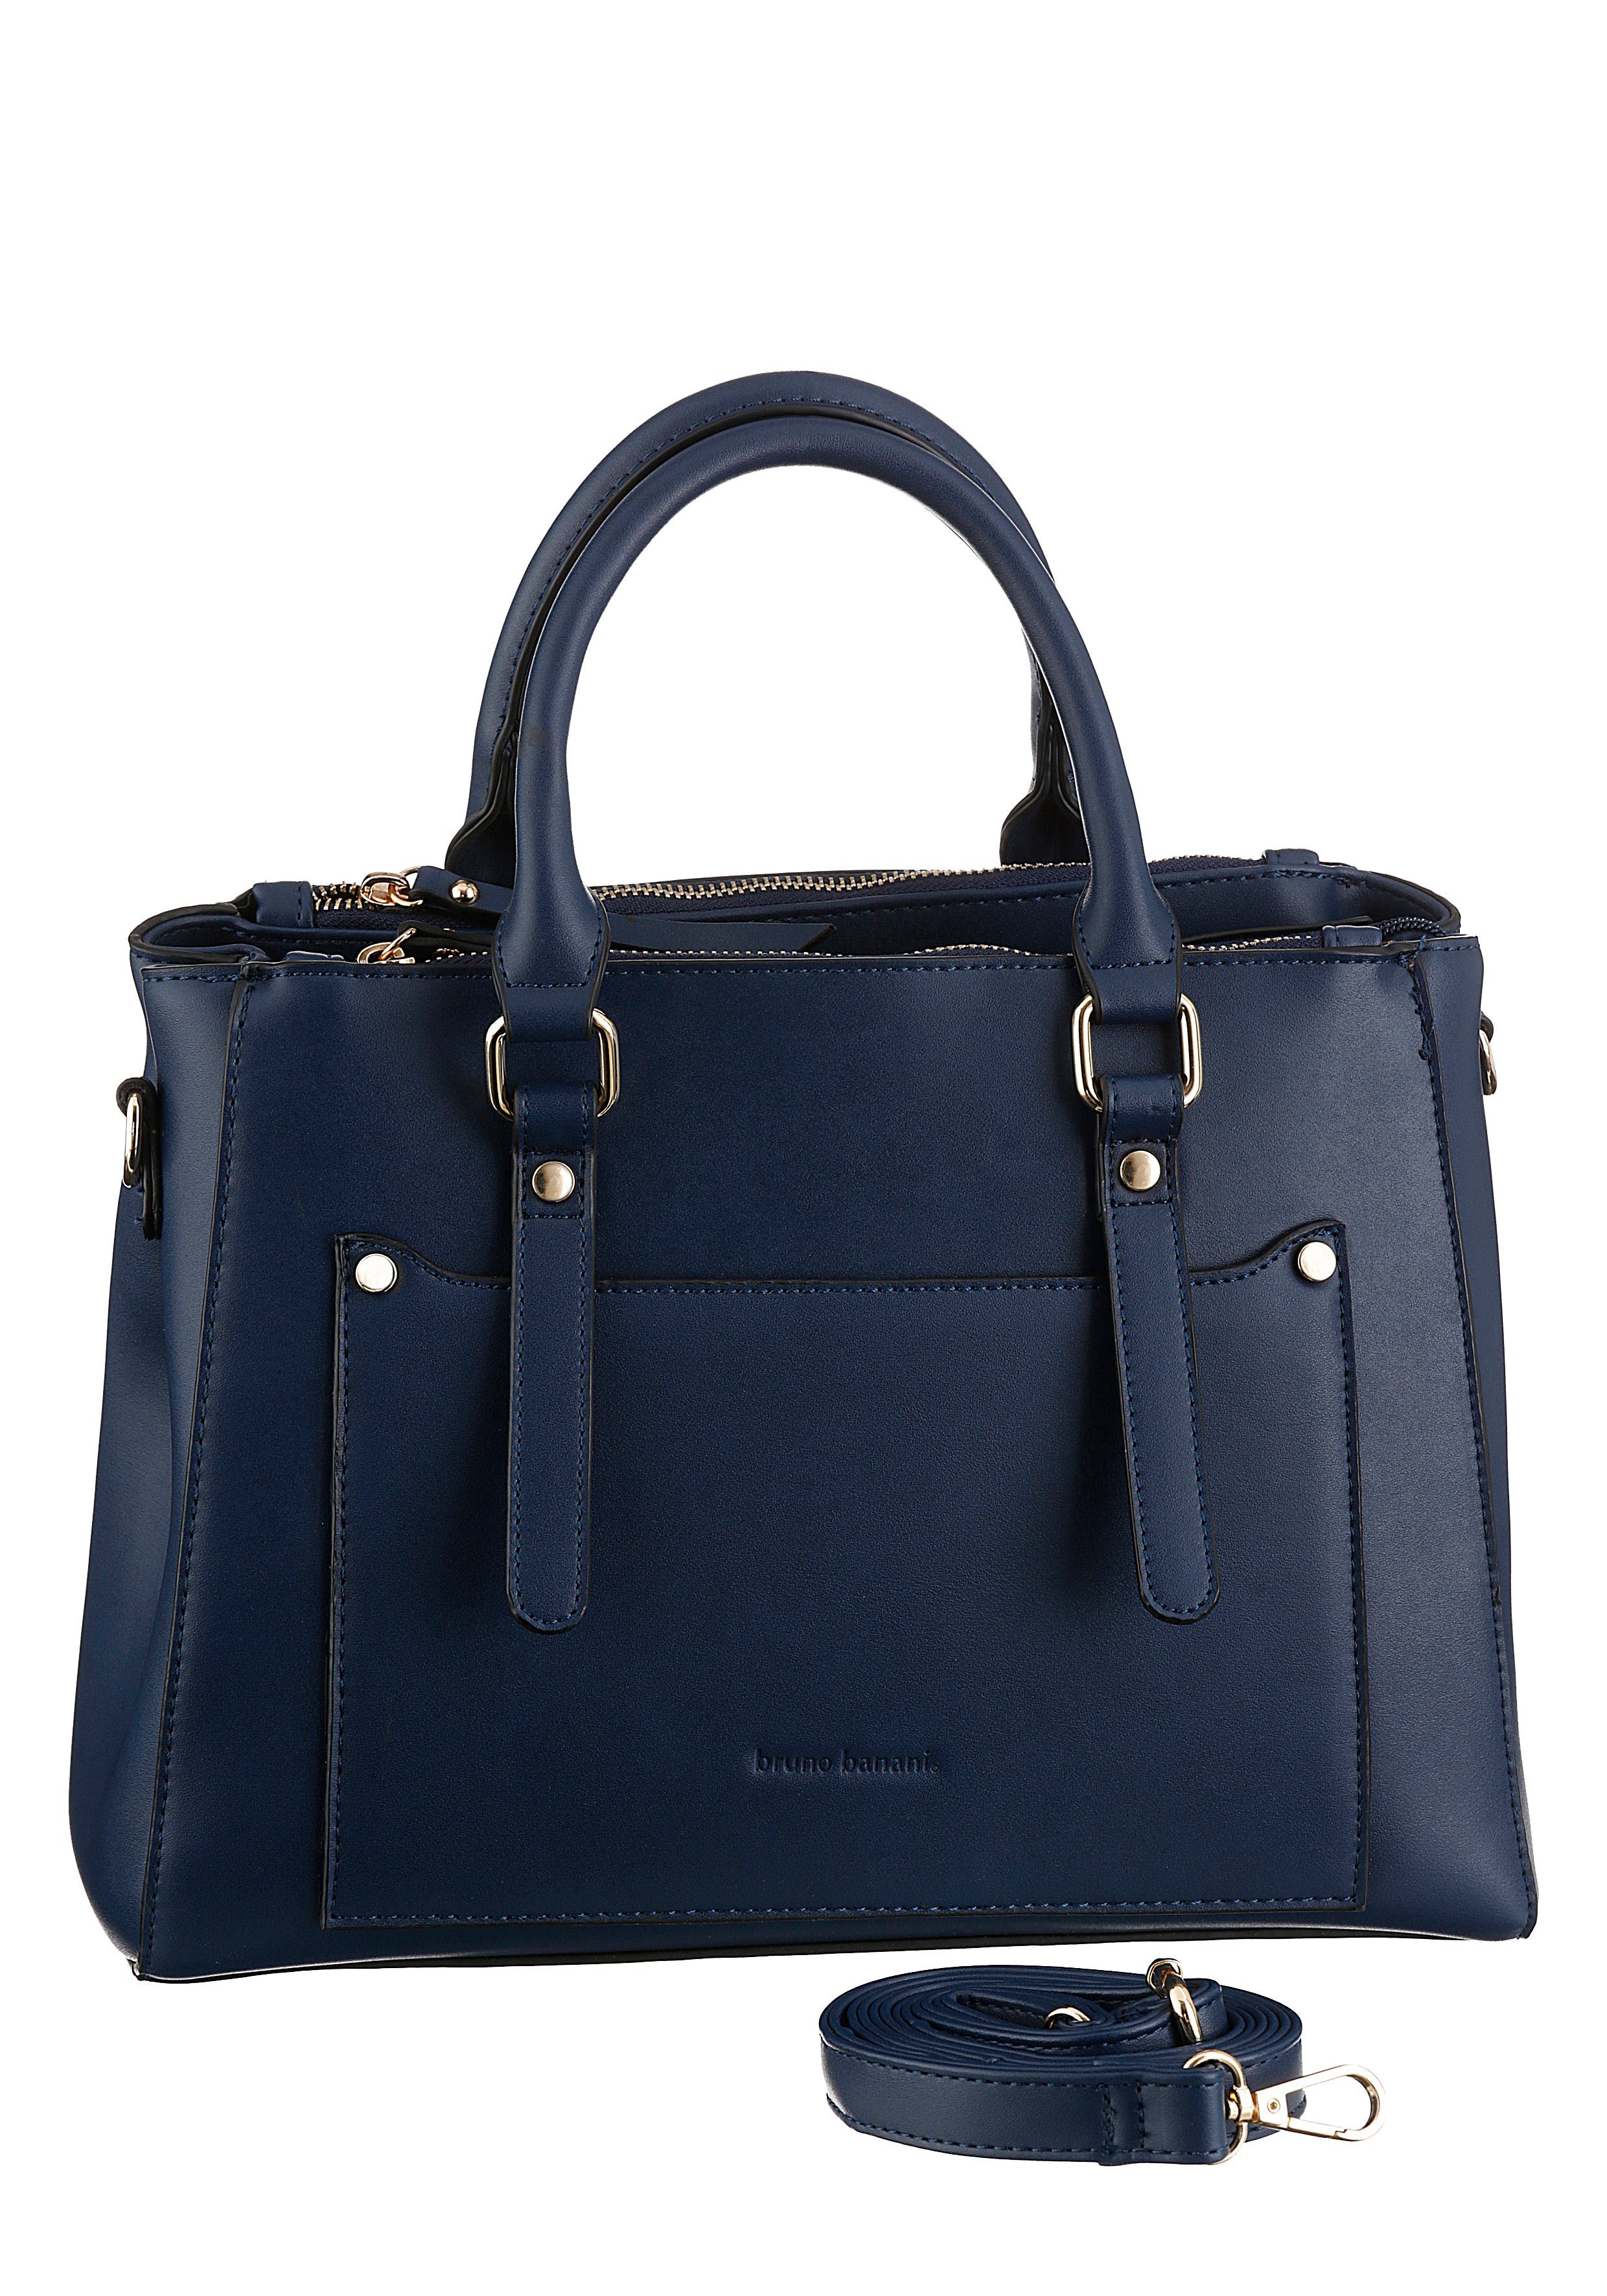 Blaue Damenhandtaschen online kaufen | OTTO